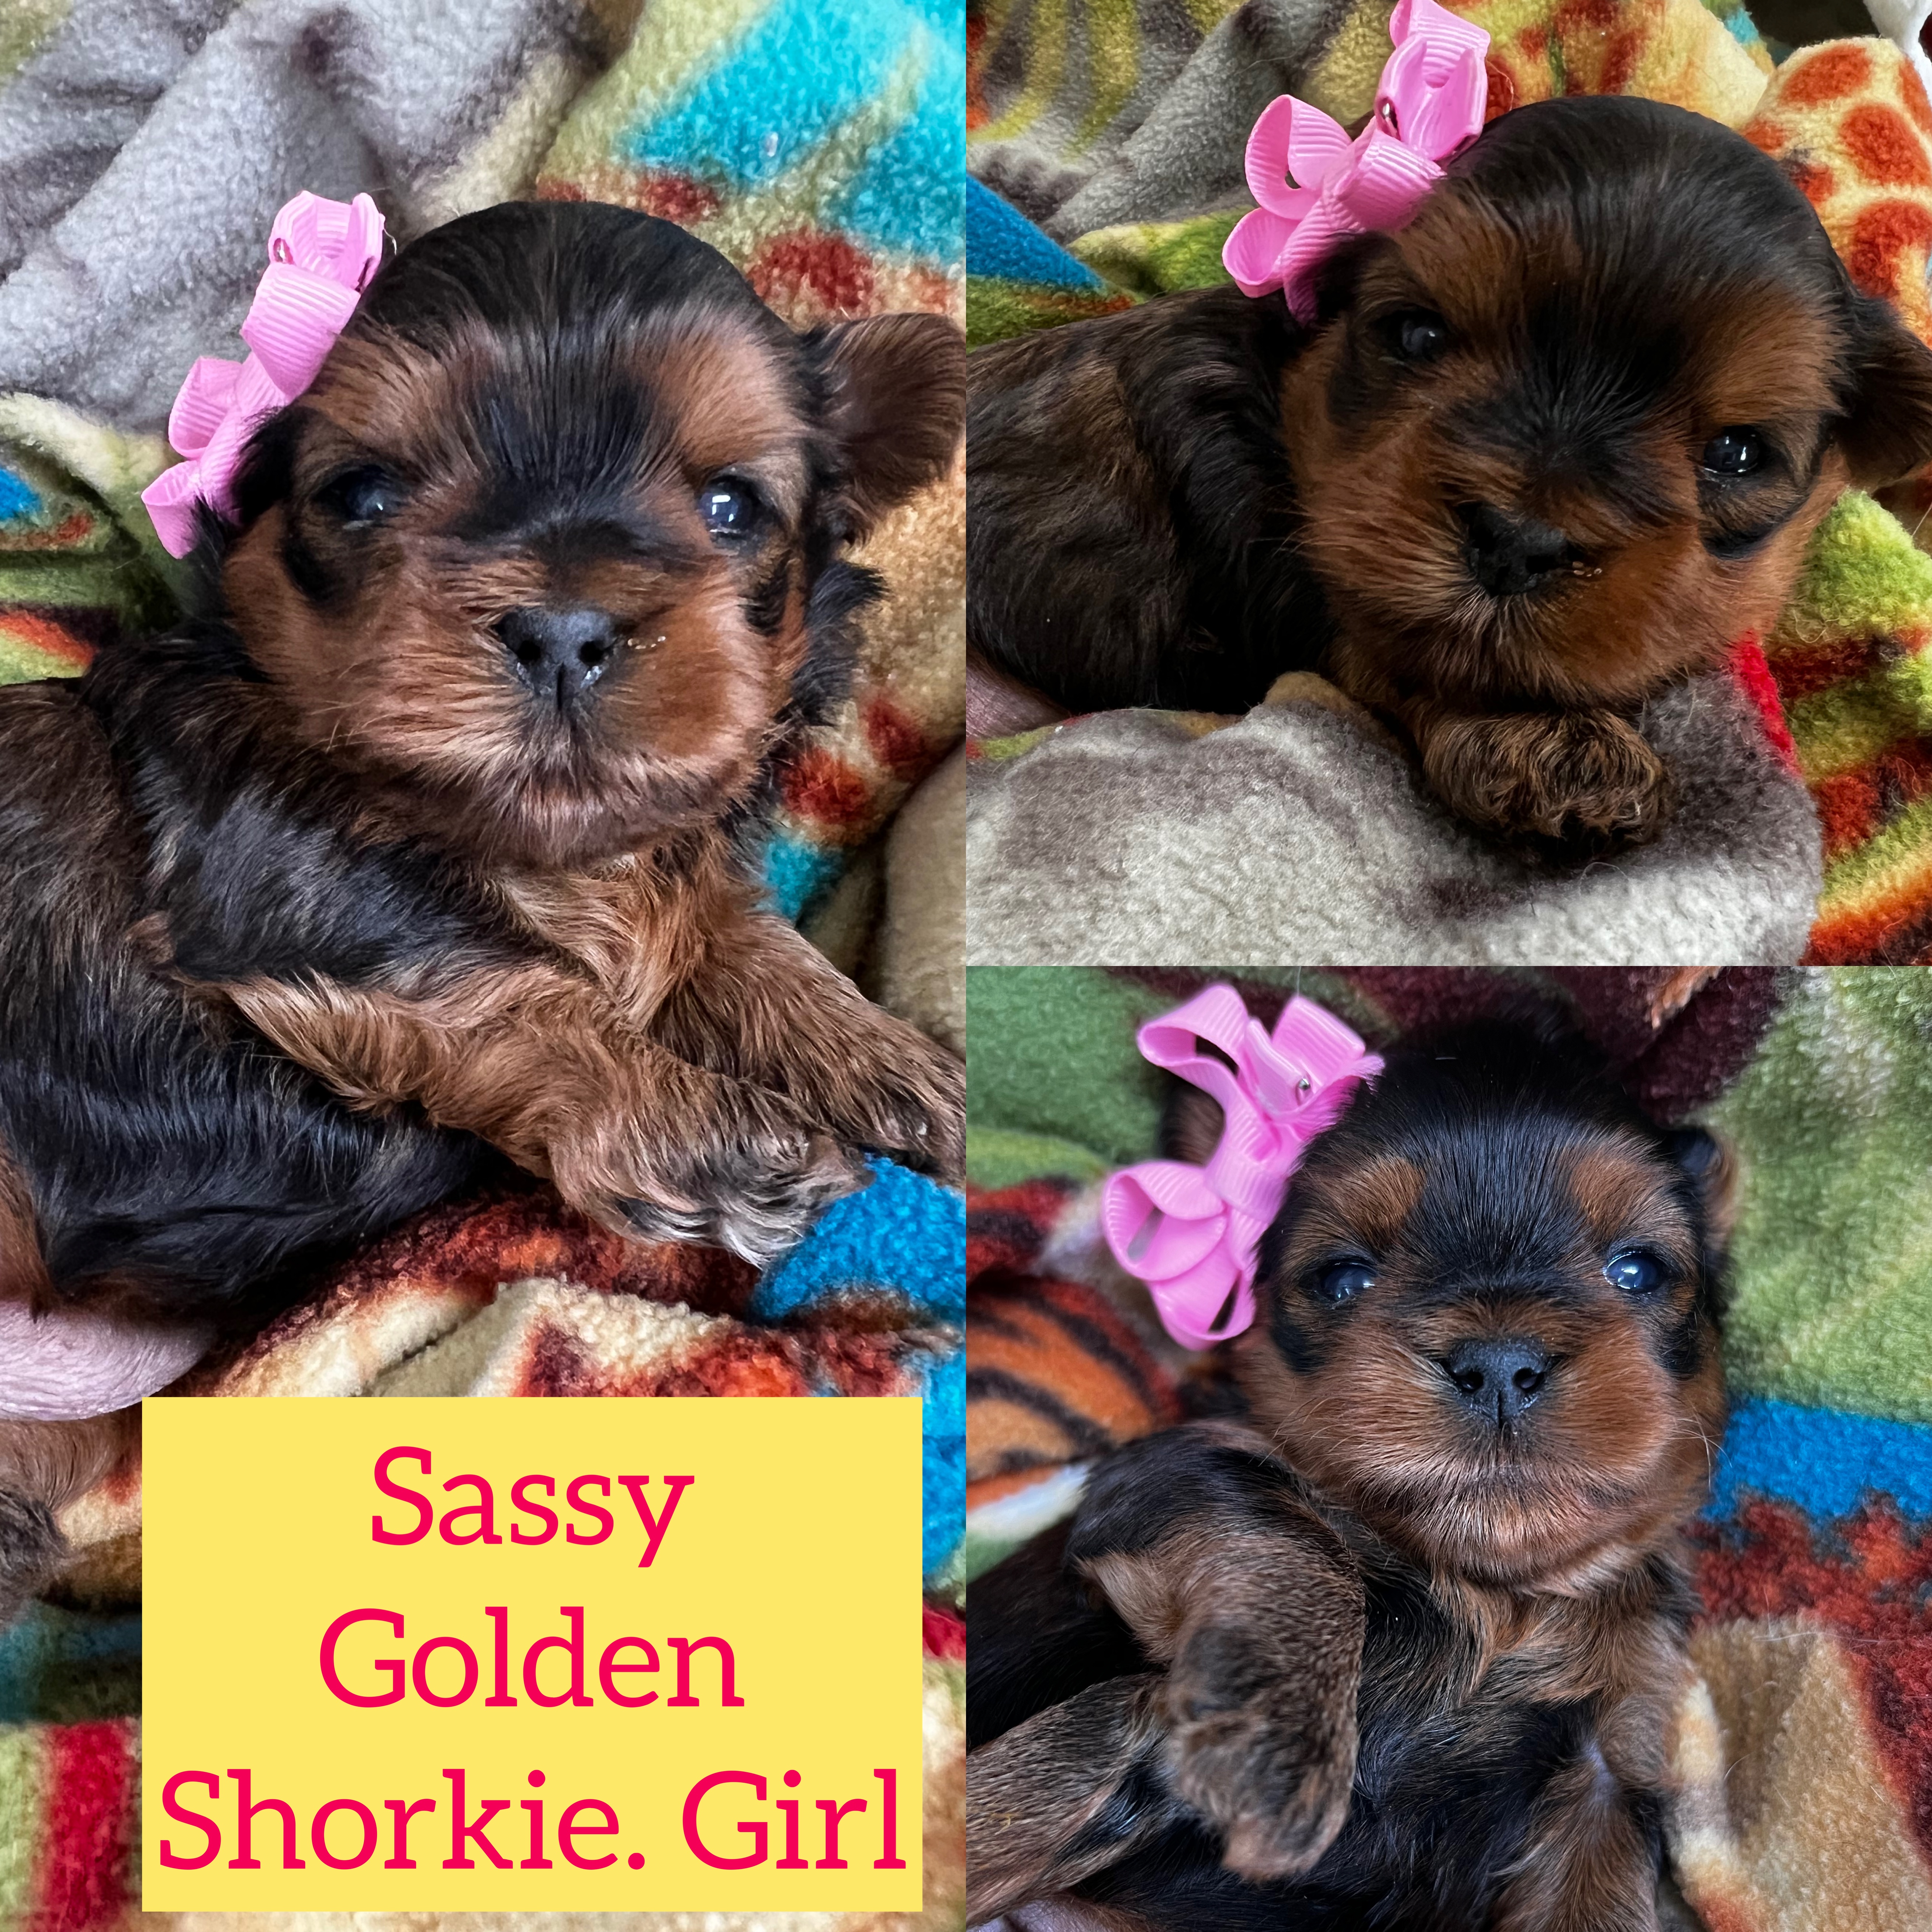 Sassy Golden Shorkie girl click on pic for info